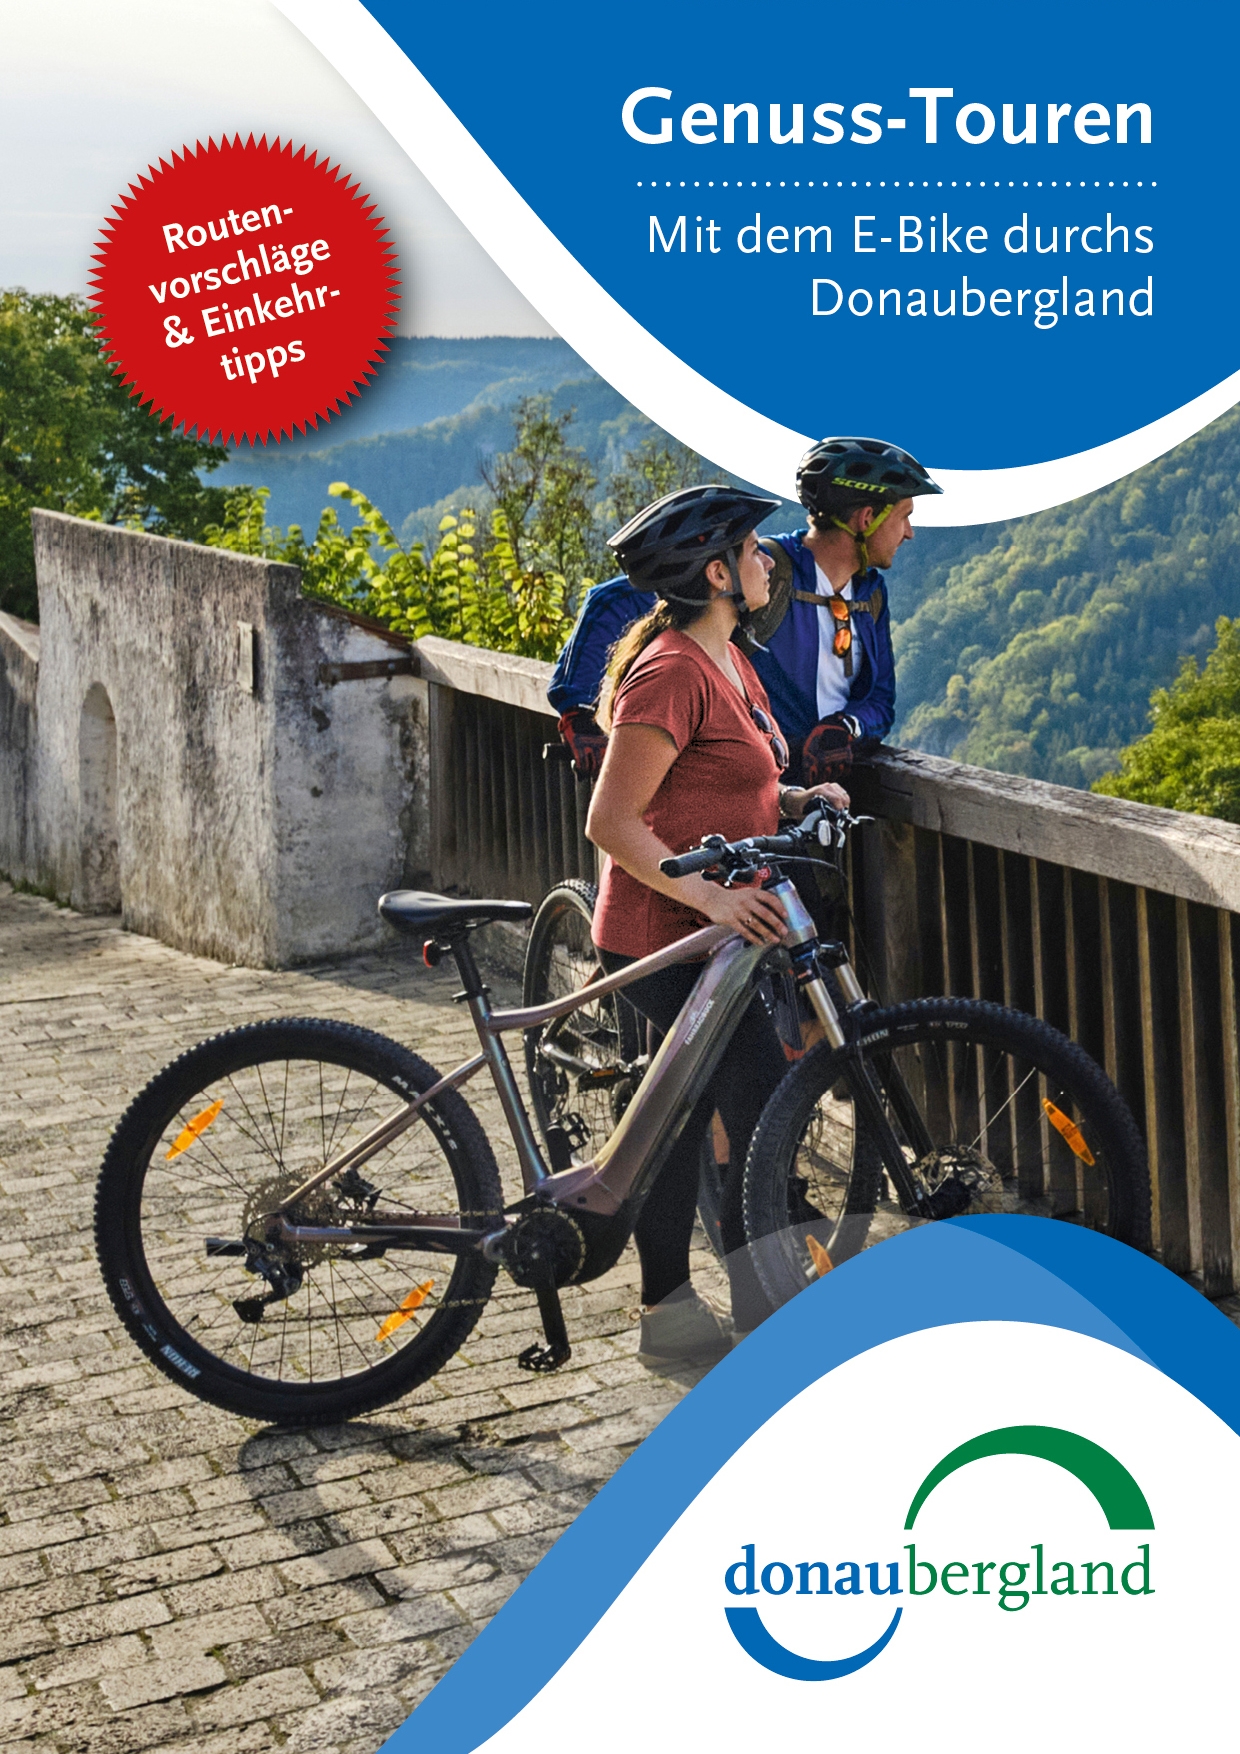 Cover-Bild zu den Genuss-Touren, mit dem E-Bike durchs Donaubergland.